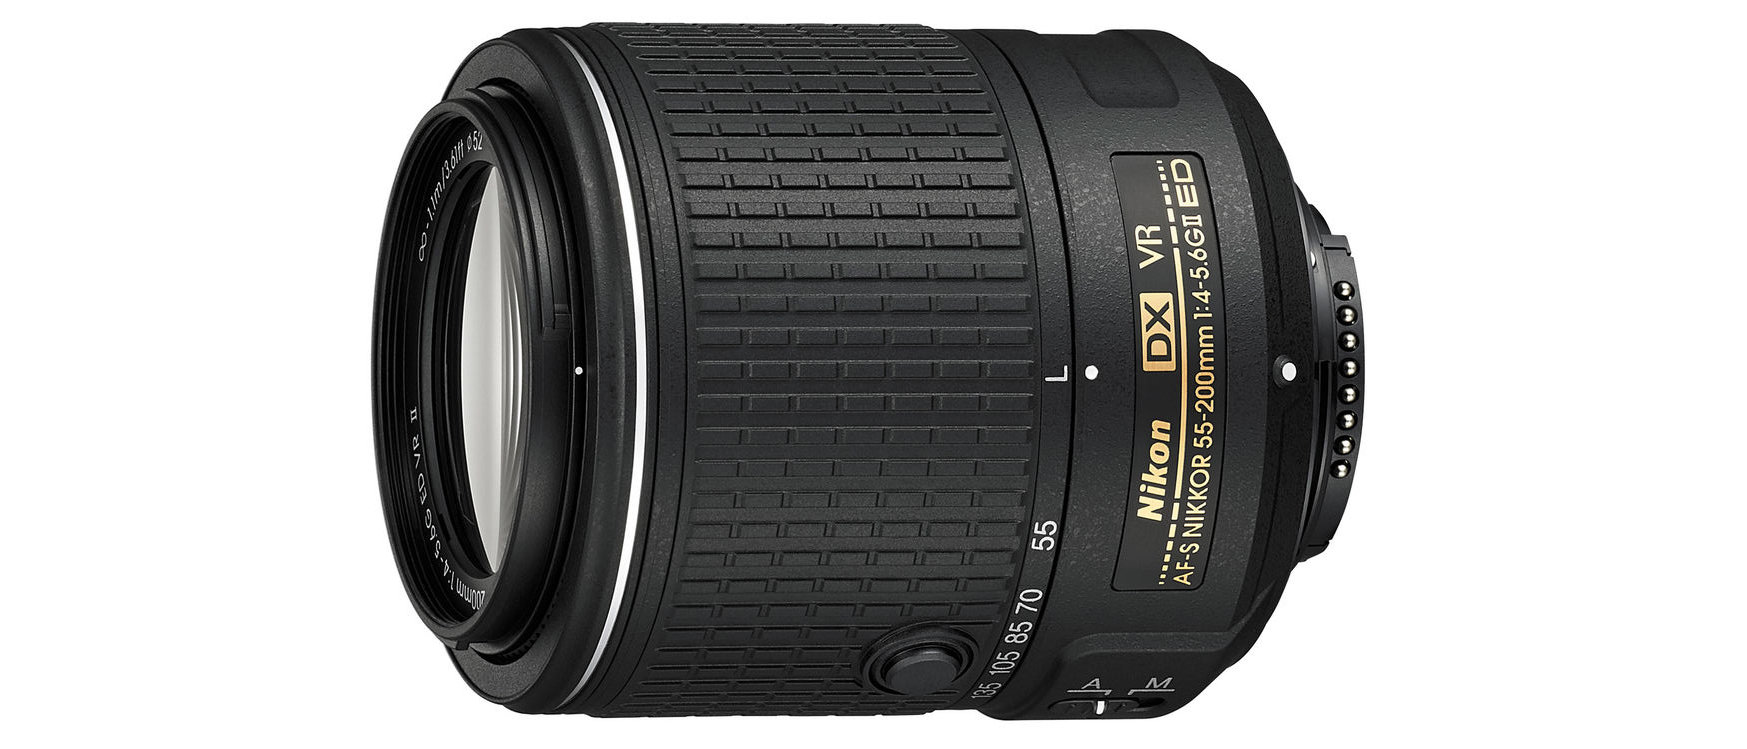 Nikon AF-S DX 55-200mm f/4-5.6G ED VR II review | Digital Camera World